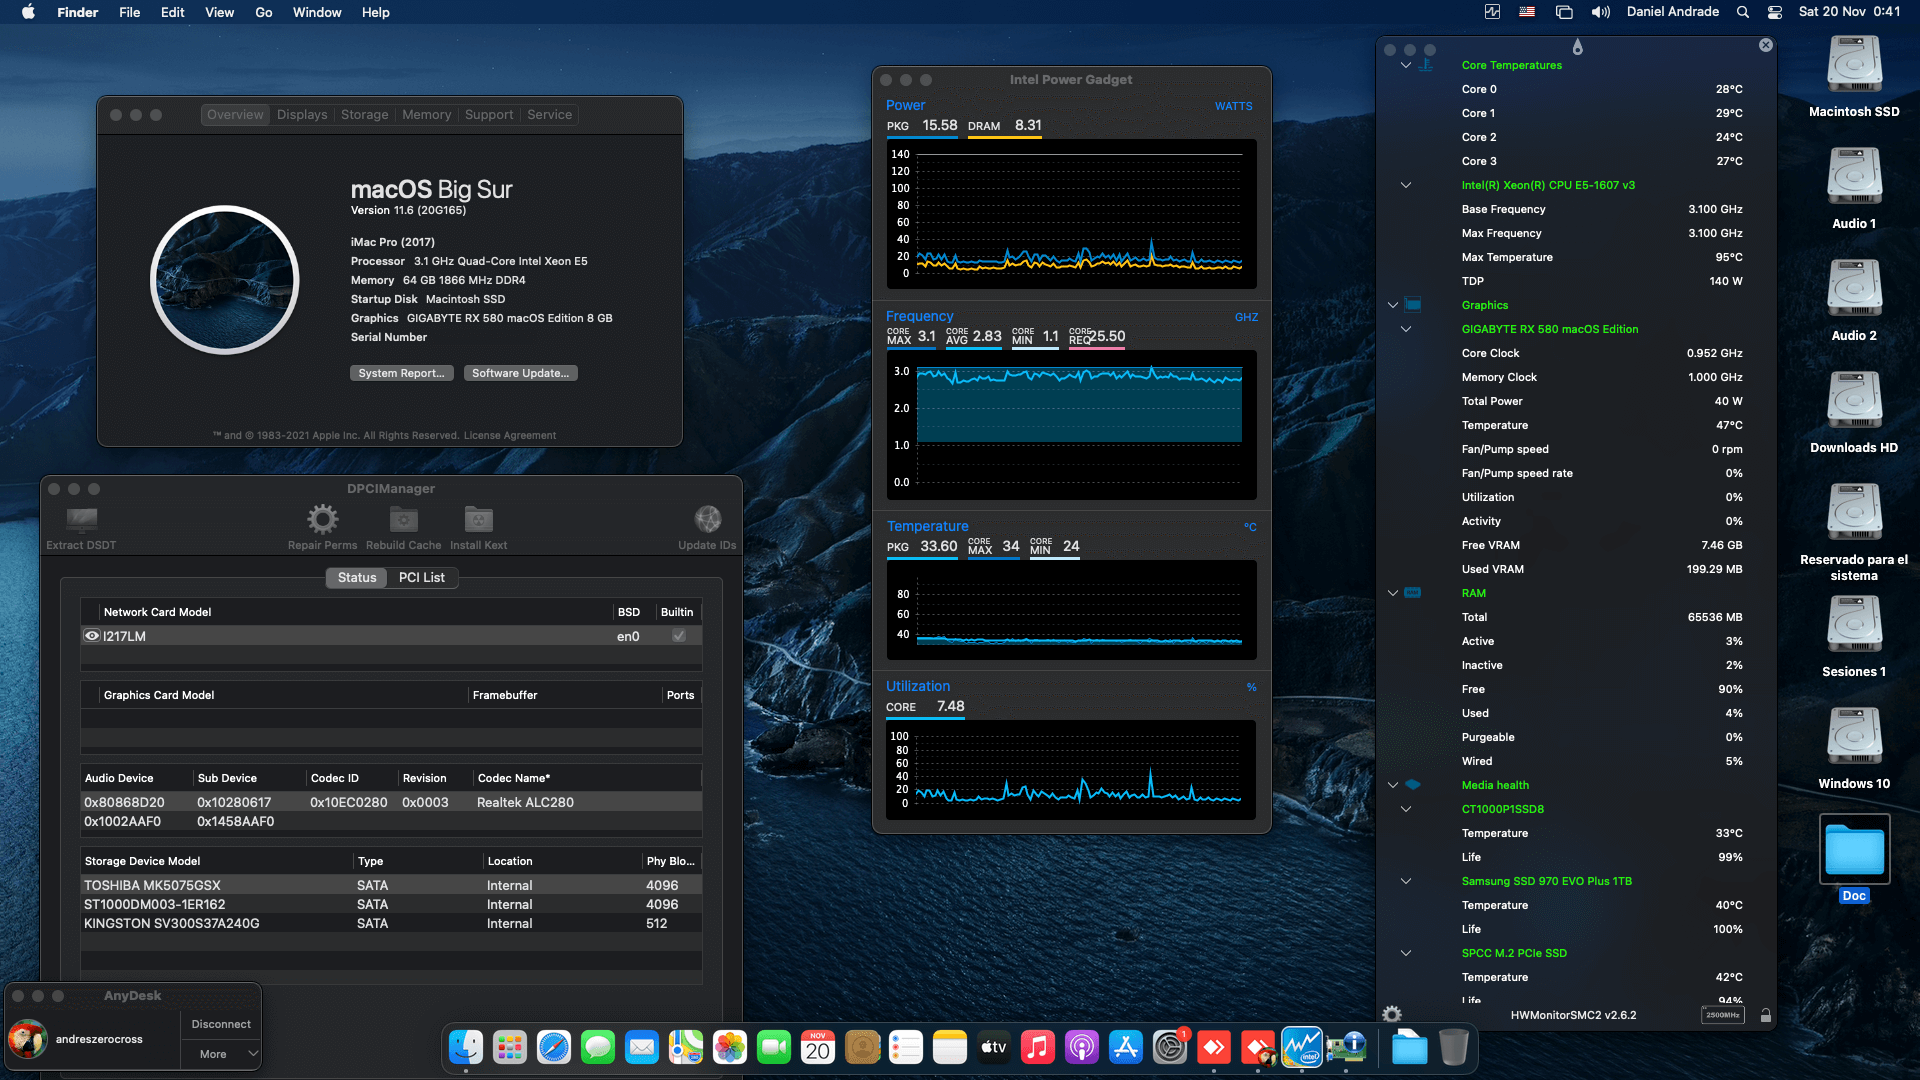 Success Hackintosh macOS Big Sur 11.6 Build 20G165 in Dell Precision T5810 Desktop Workstation